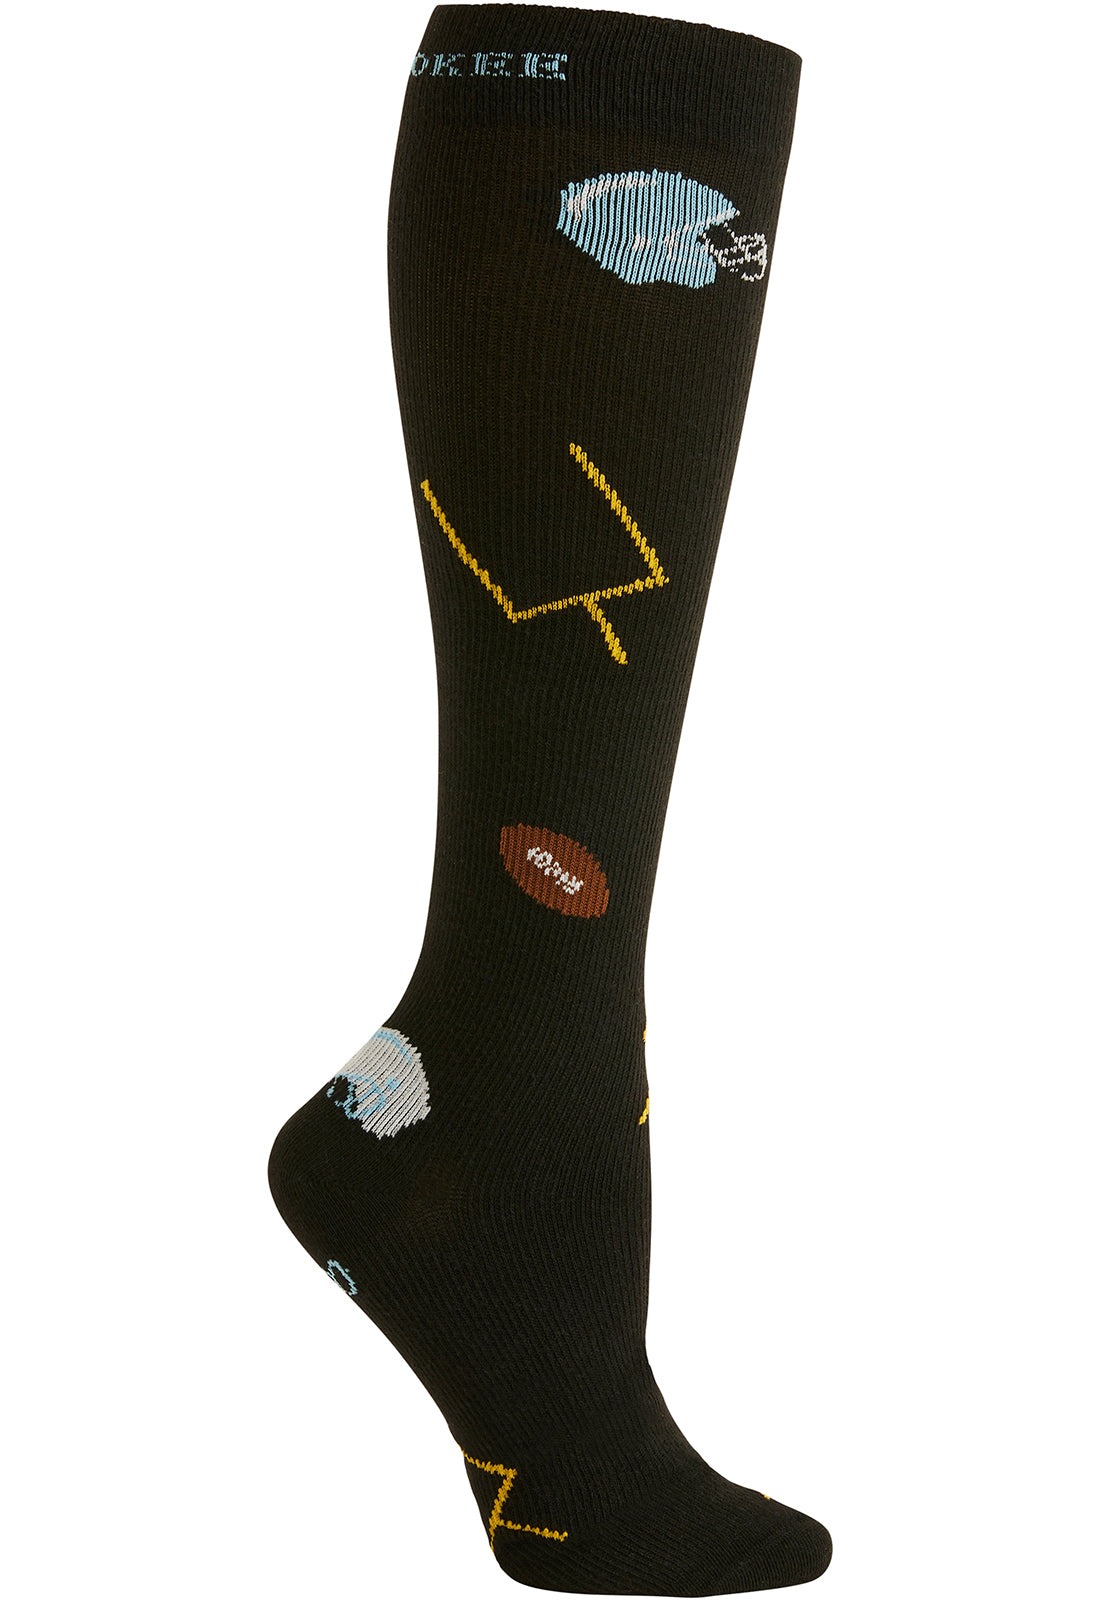 Men's Compression Socks 10-15mmHg Men's Compression Socks Cherokee Legwear Football Fun  